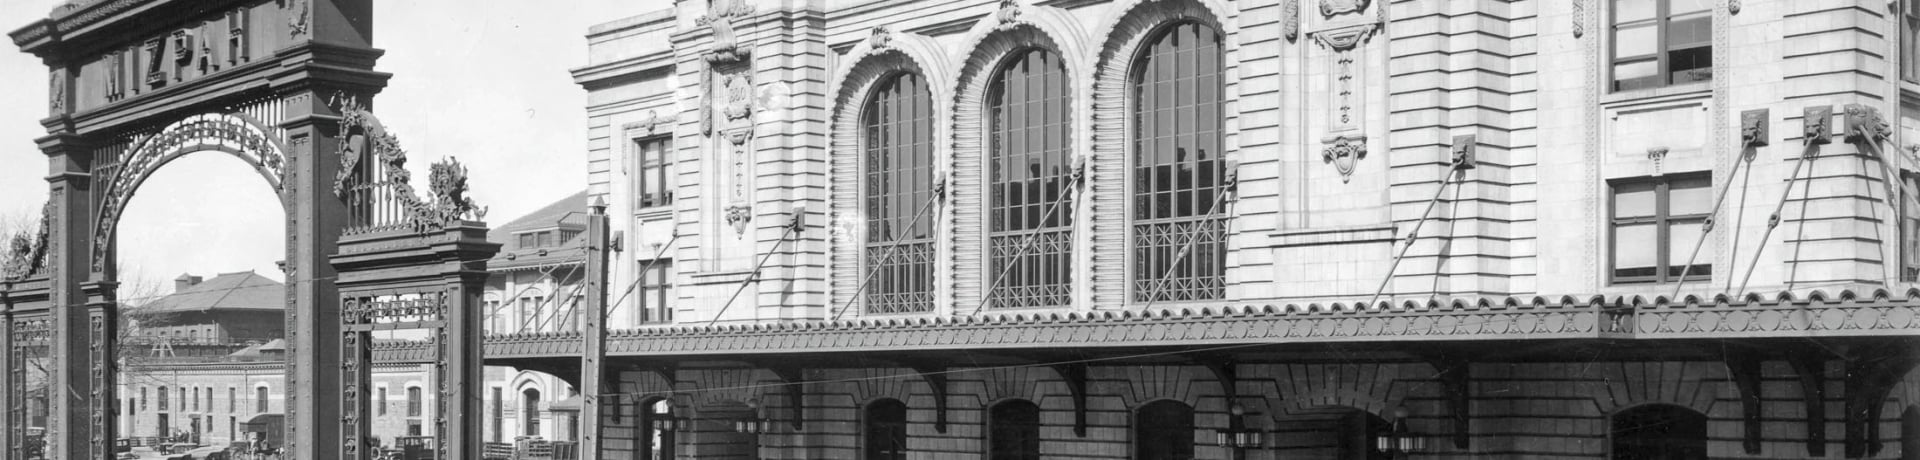 A vintage look at Denver Union Station